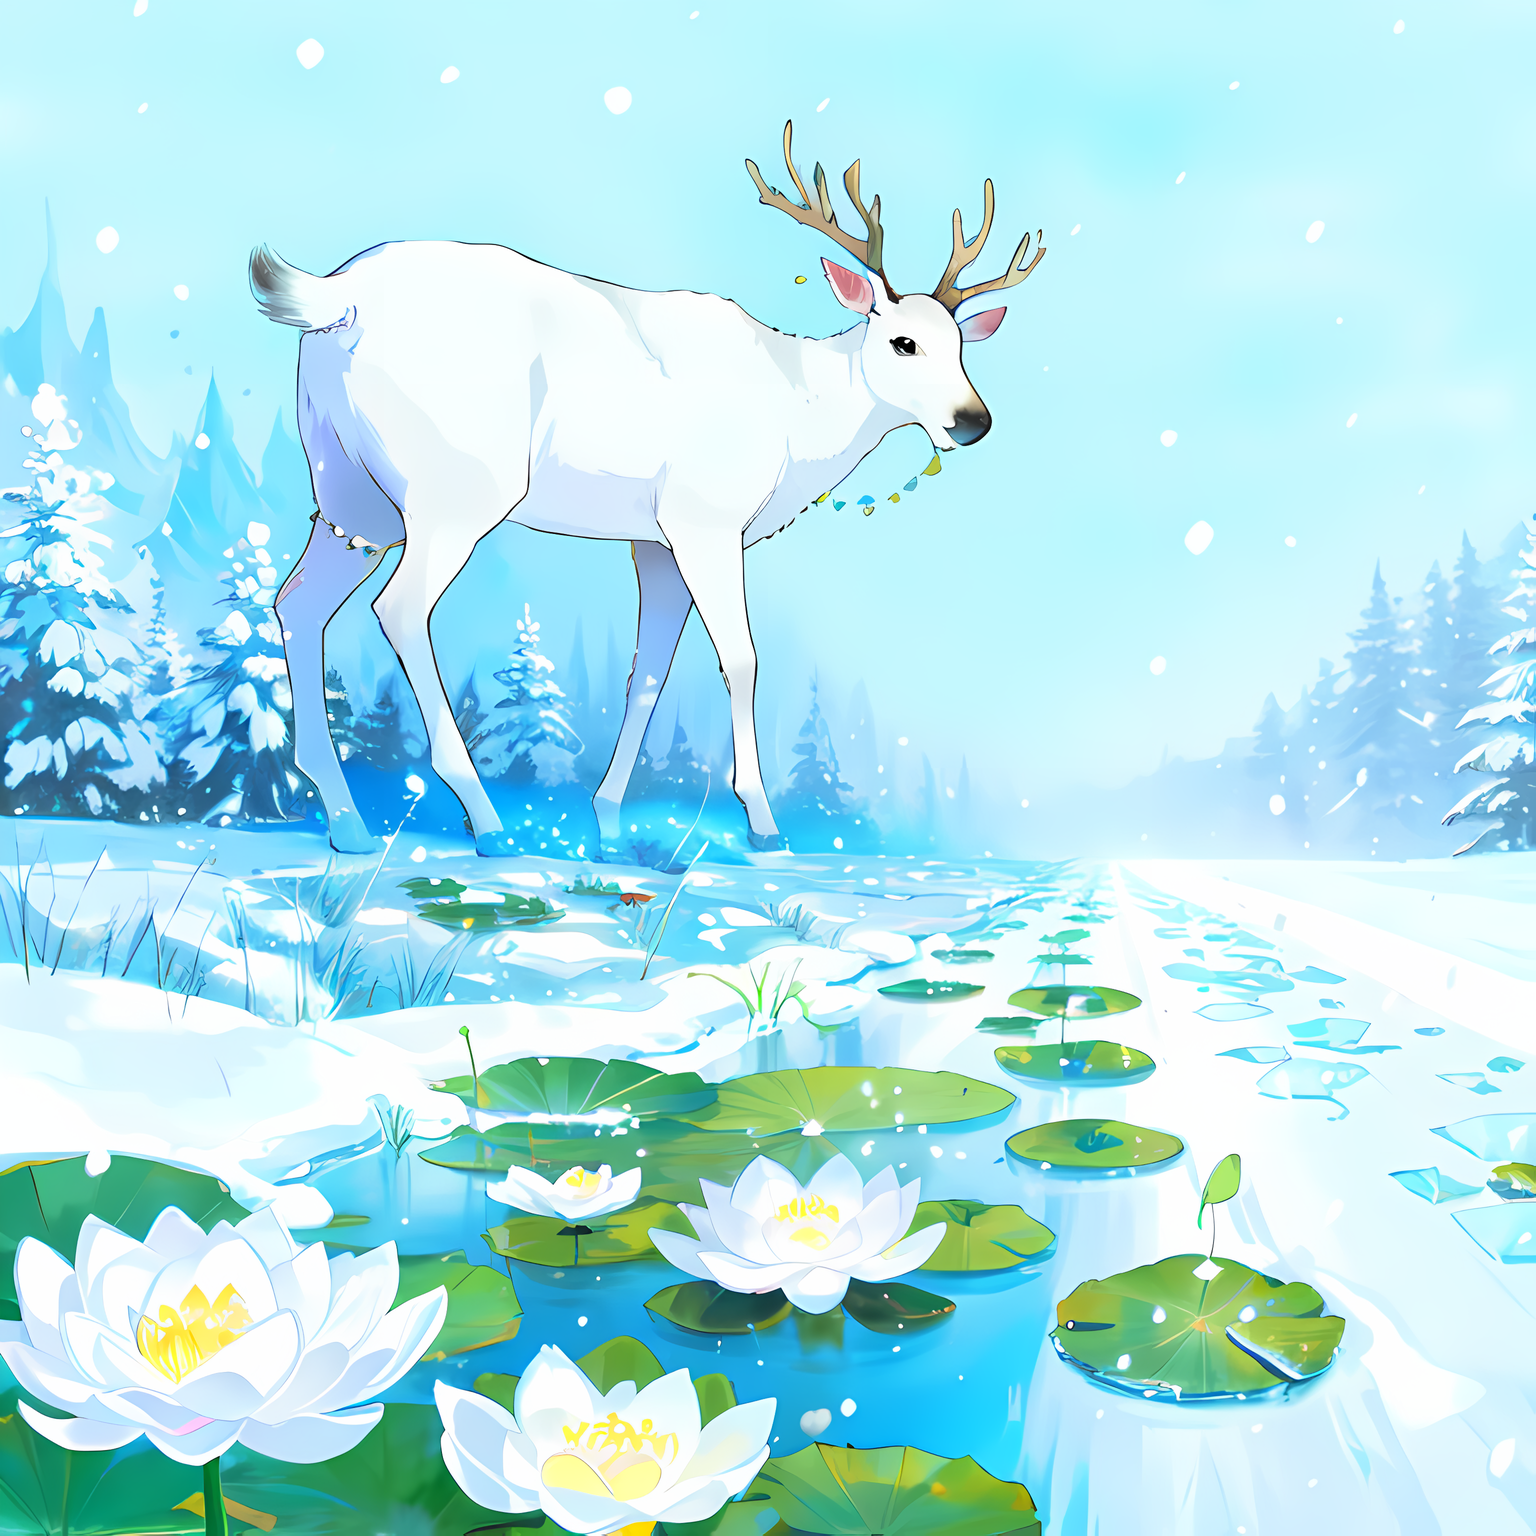 白花在雪中，荷叶浮水漫天雪花，莲花树下春风拂面。插画图片壁纸